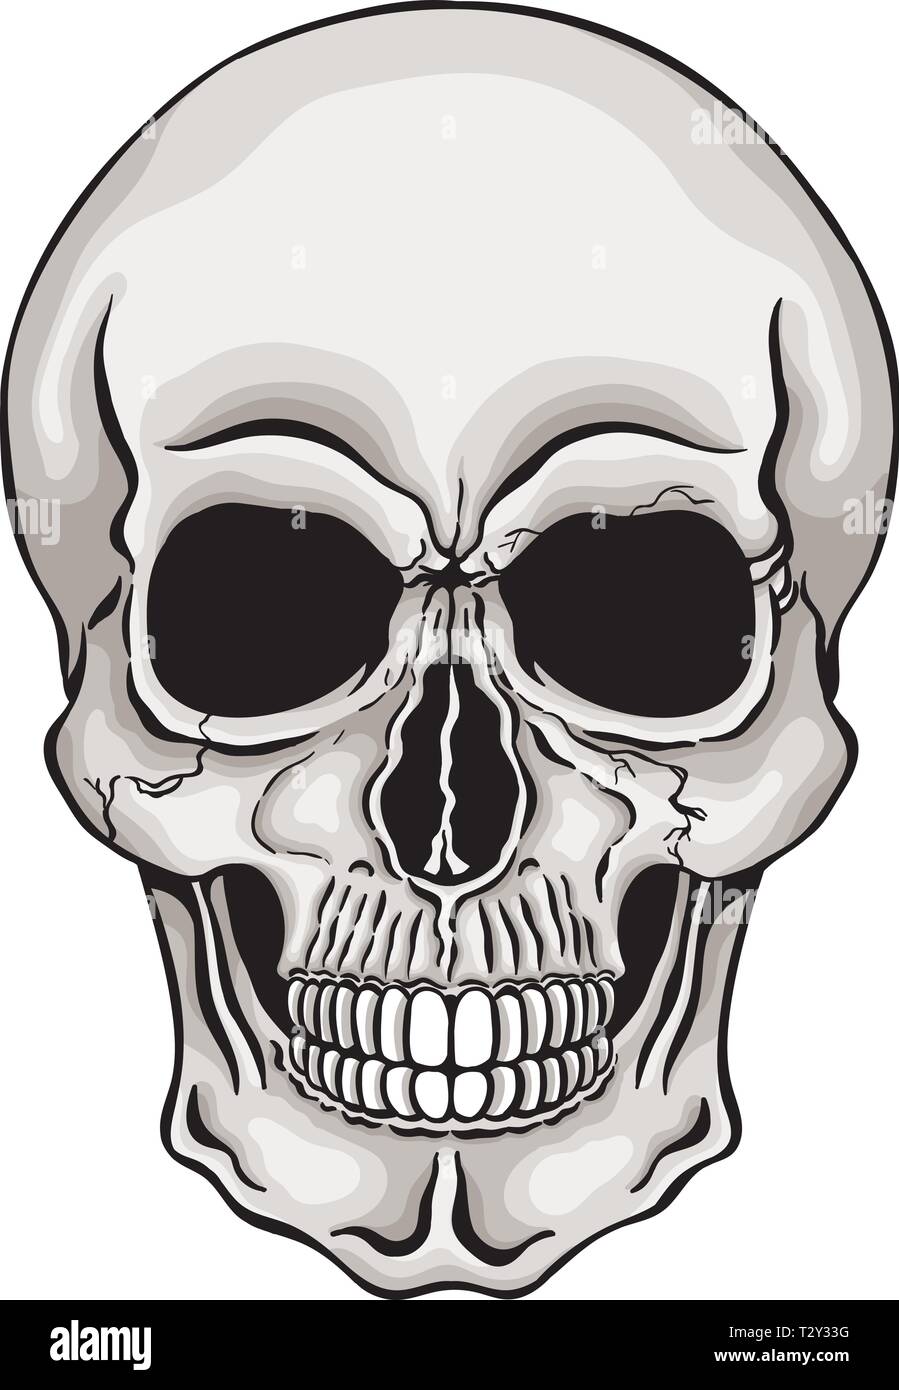 Vector illustration of human skull. Stock Vector